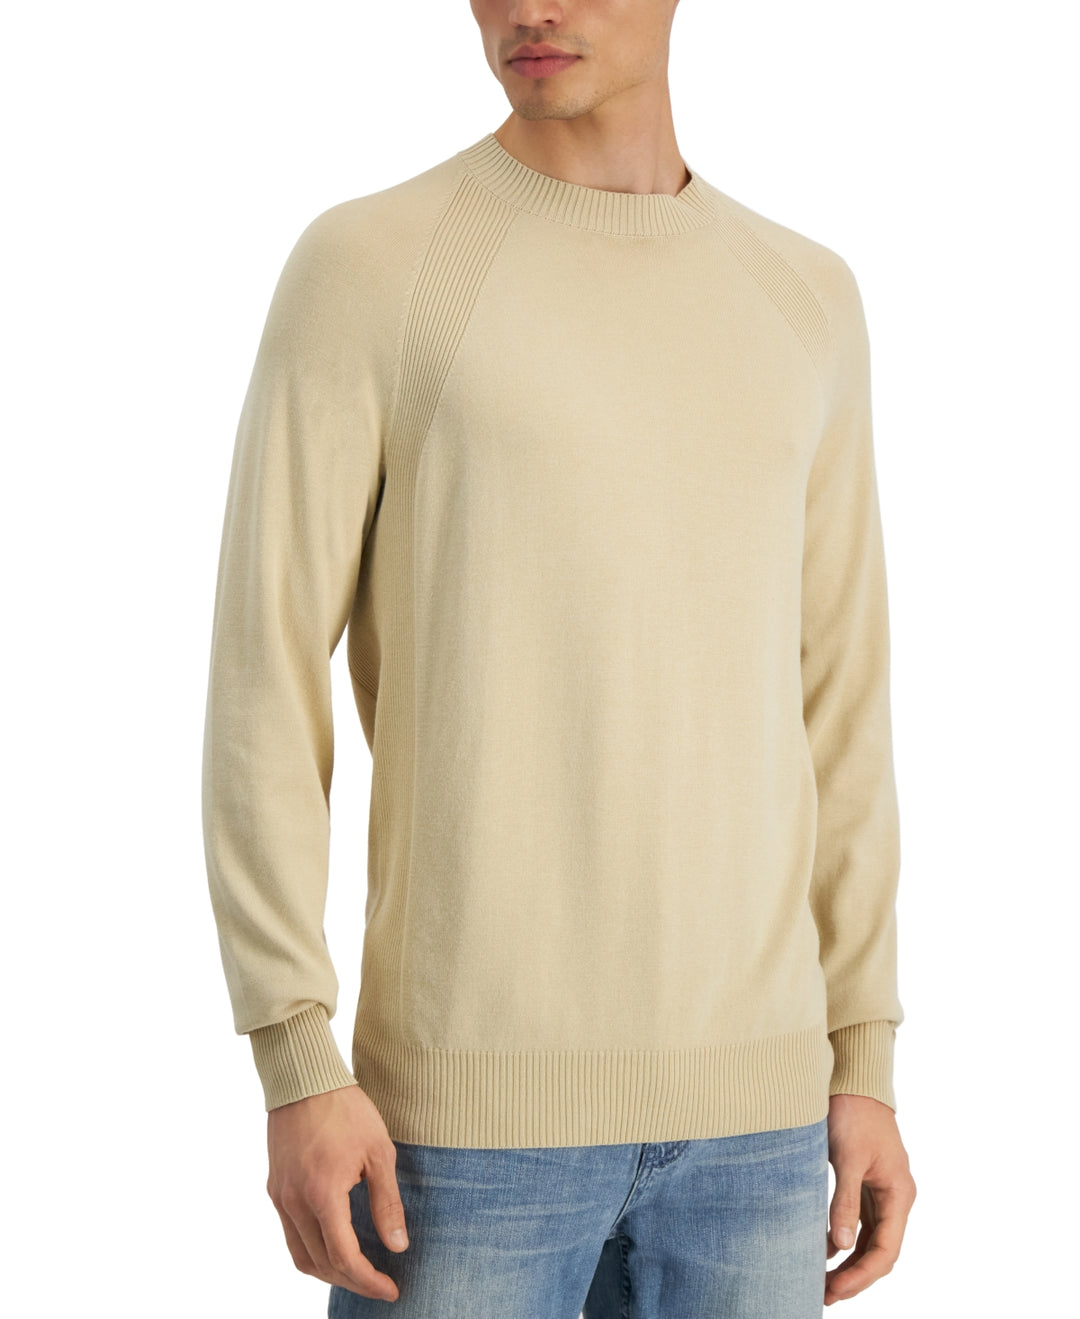 Alfani Men's Ribbed Raglan Sweater Brown Size XX Large